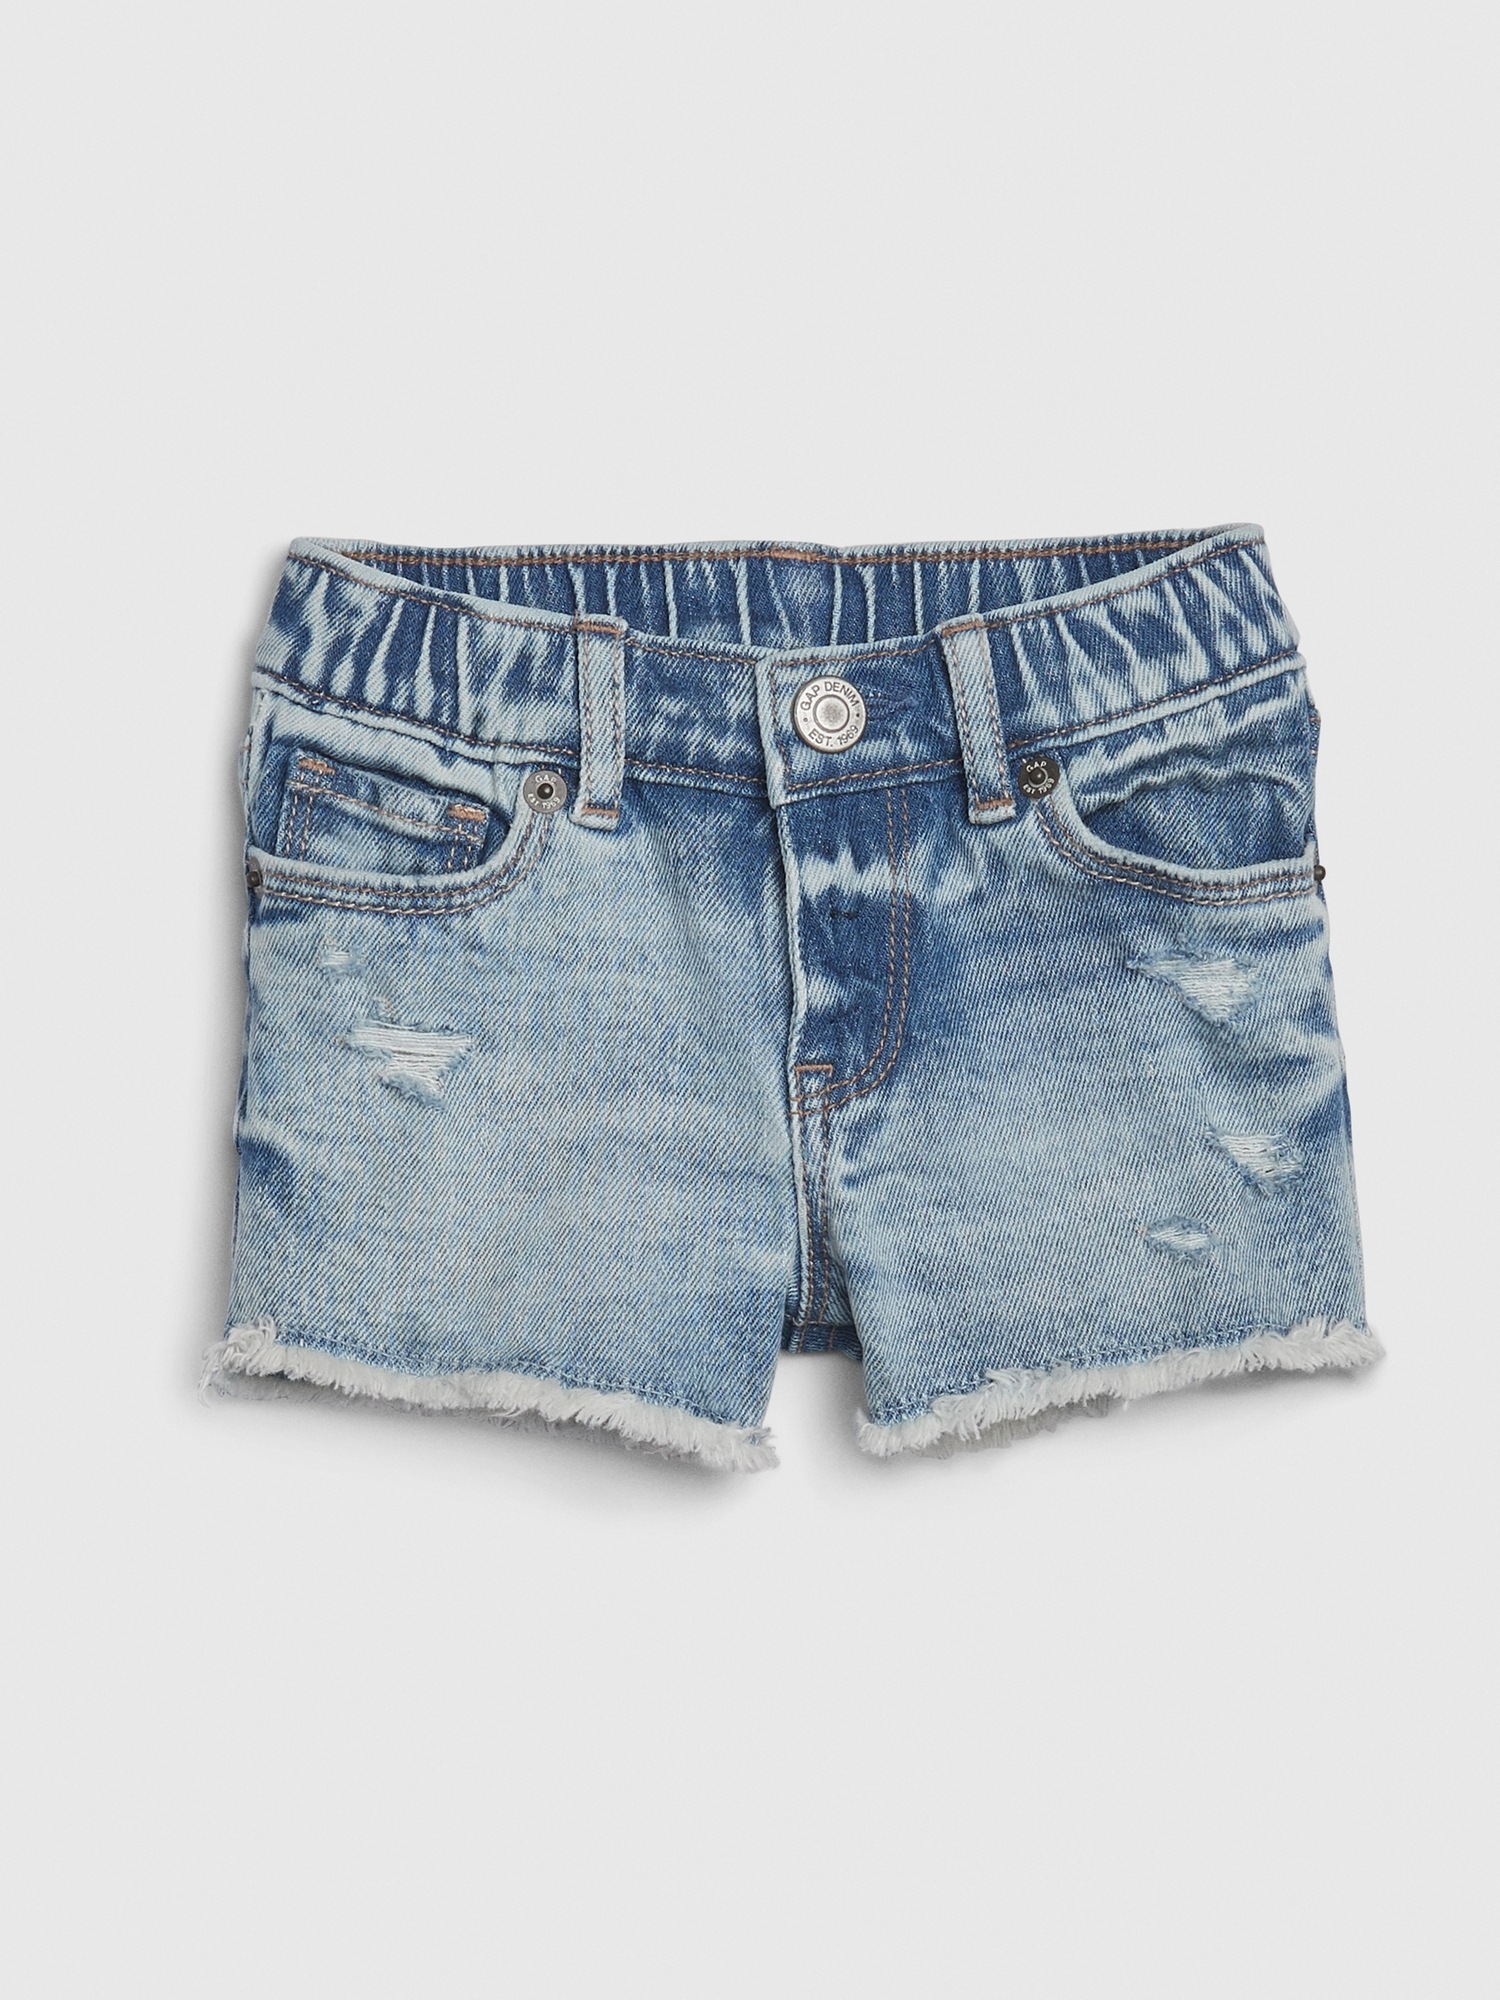 jean shorts gap